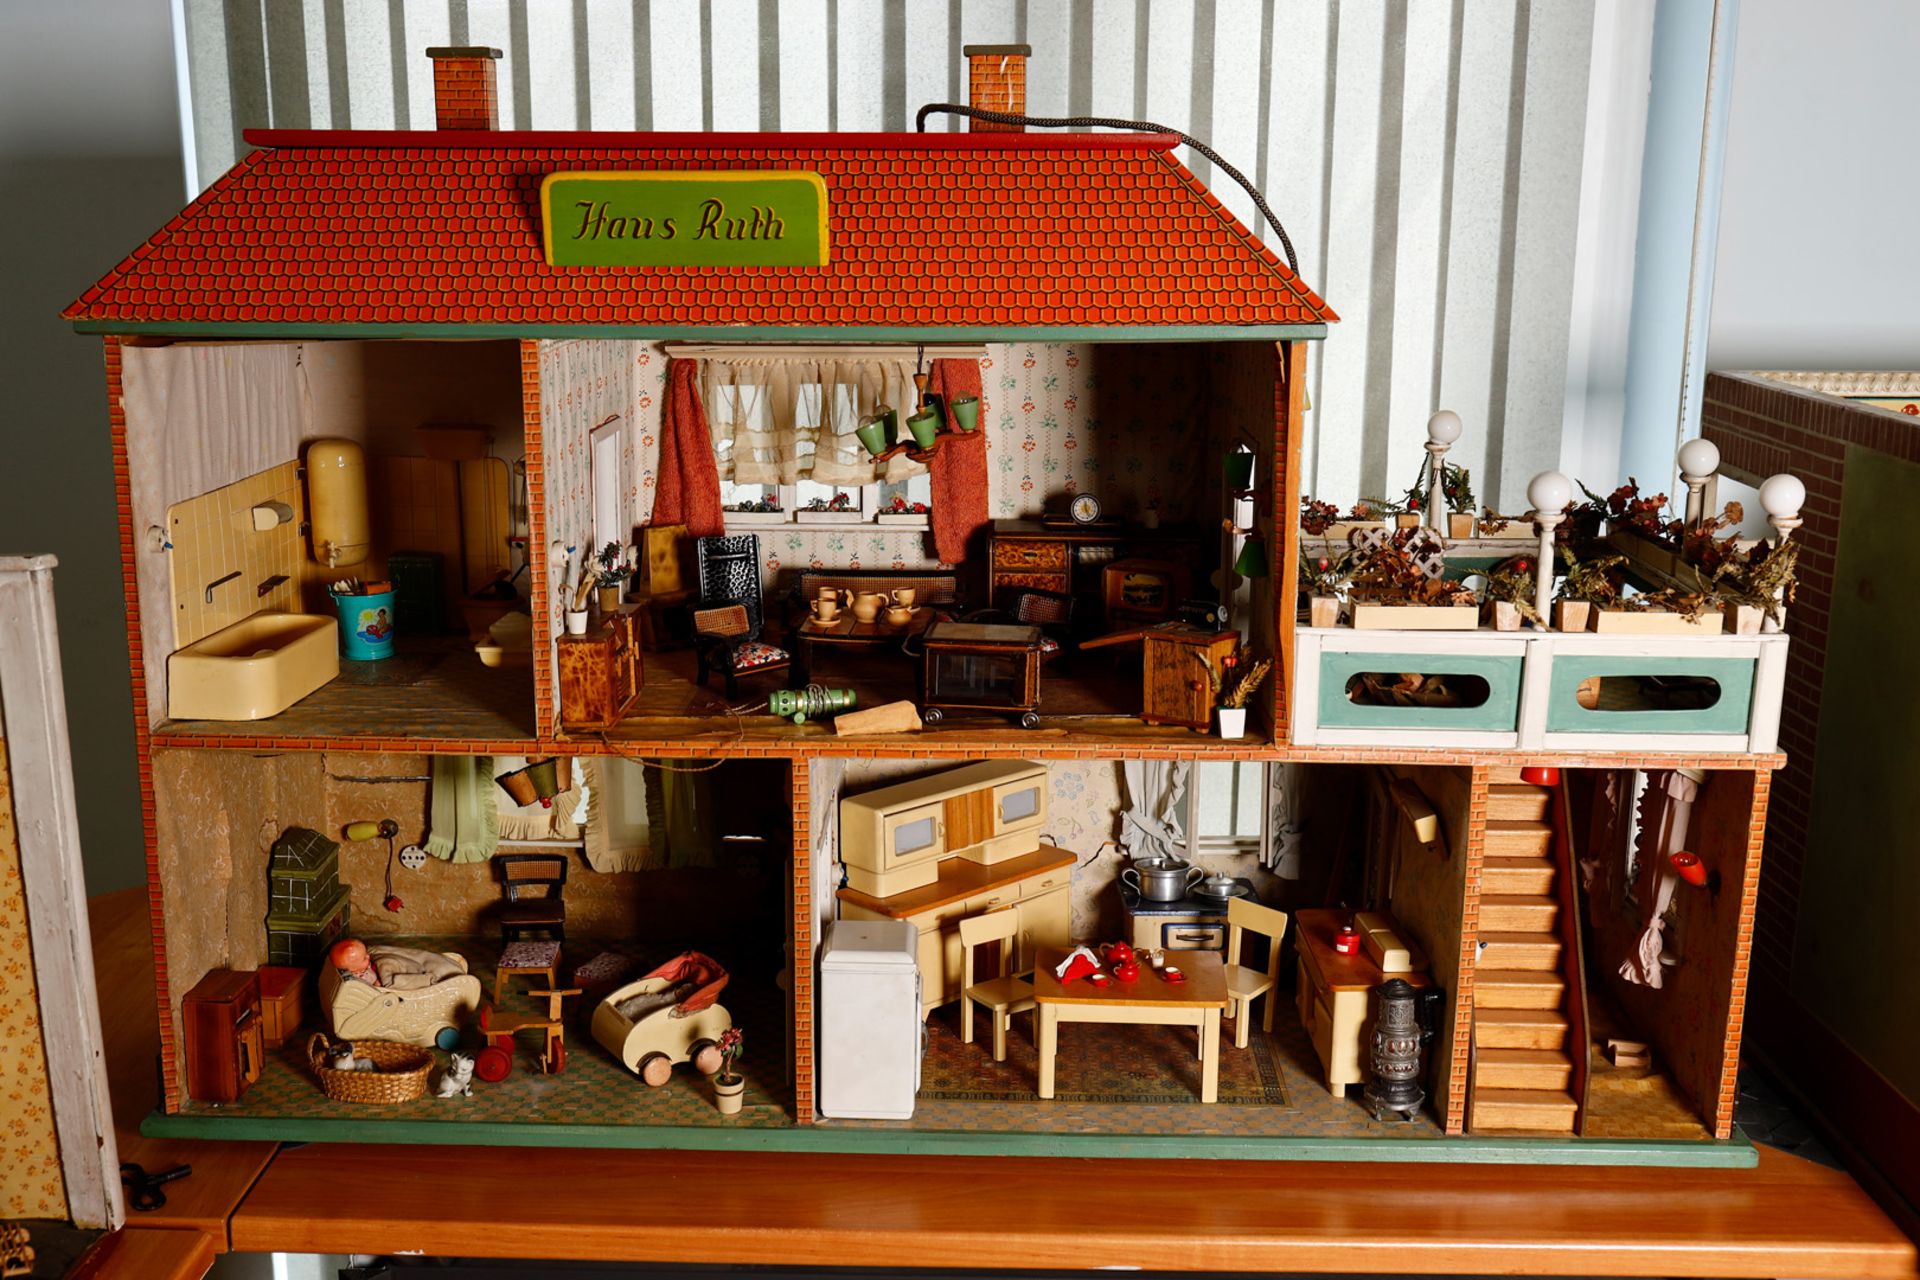 Großes Puppenhaus ”Haus Ruth”, schön möbliert, mit viel Zubehör, Püppchen, Kinderwagen, Kühlschrank,